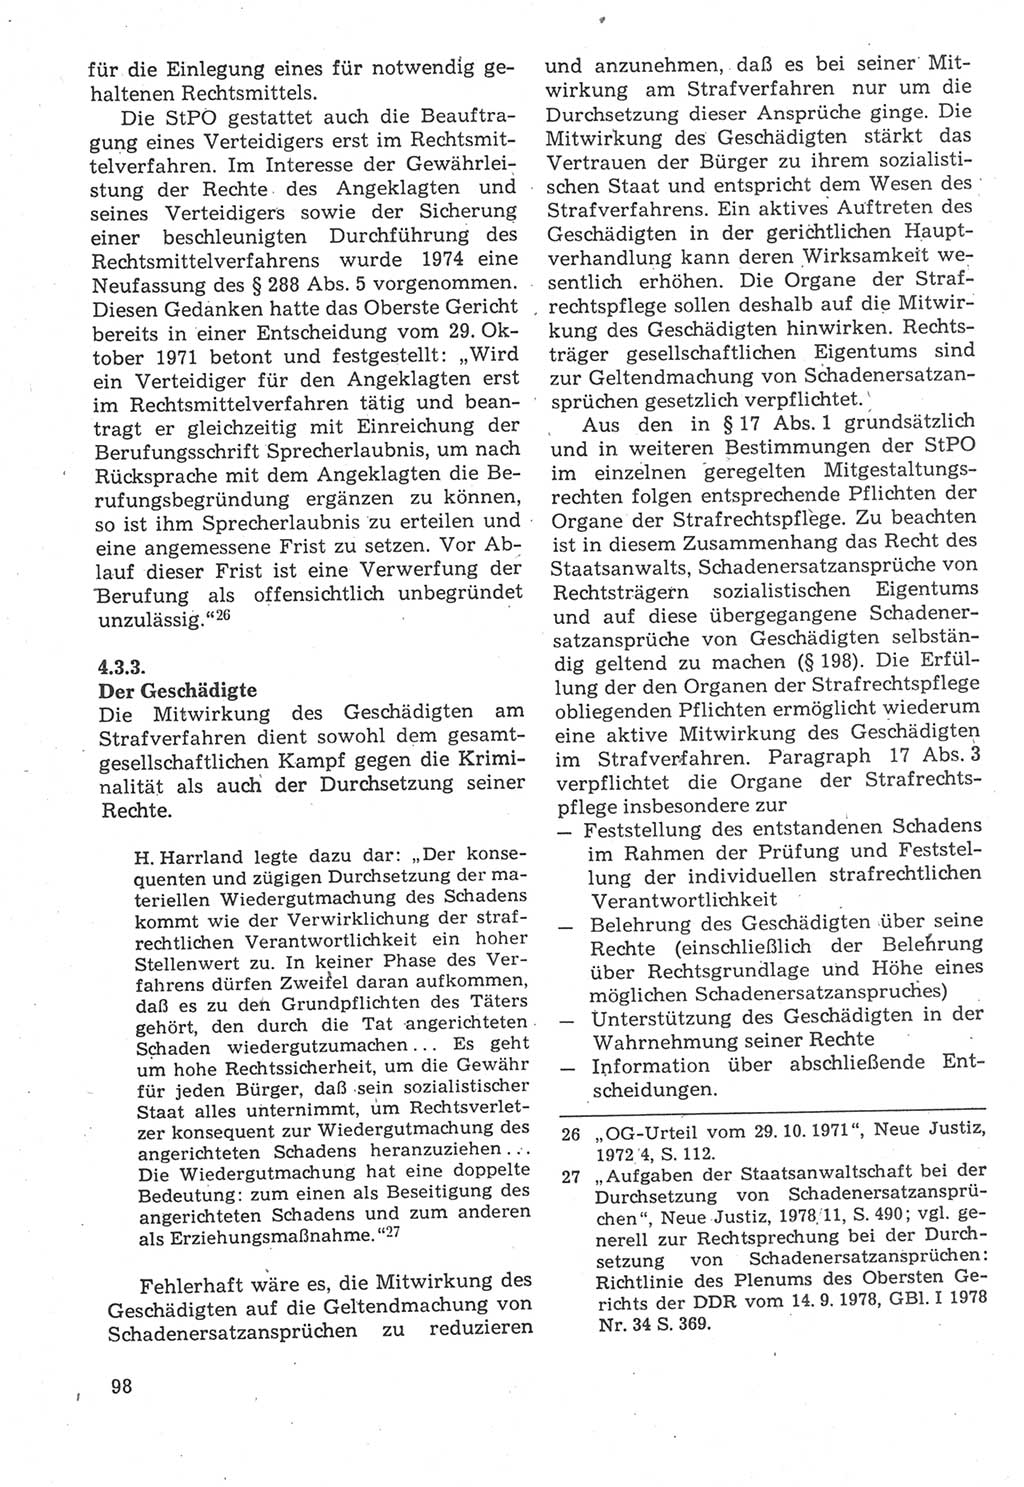 Strafverfahrensrecht [Deutsche Demokratische Republik (DDR)], Lehrbuch 1987, Seite 98 (Strafverf.-R. DDR Lb. 1987, S. 98)